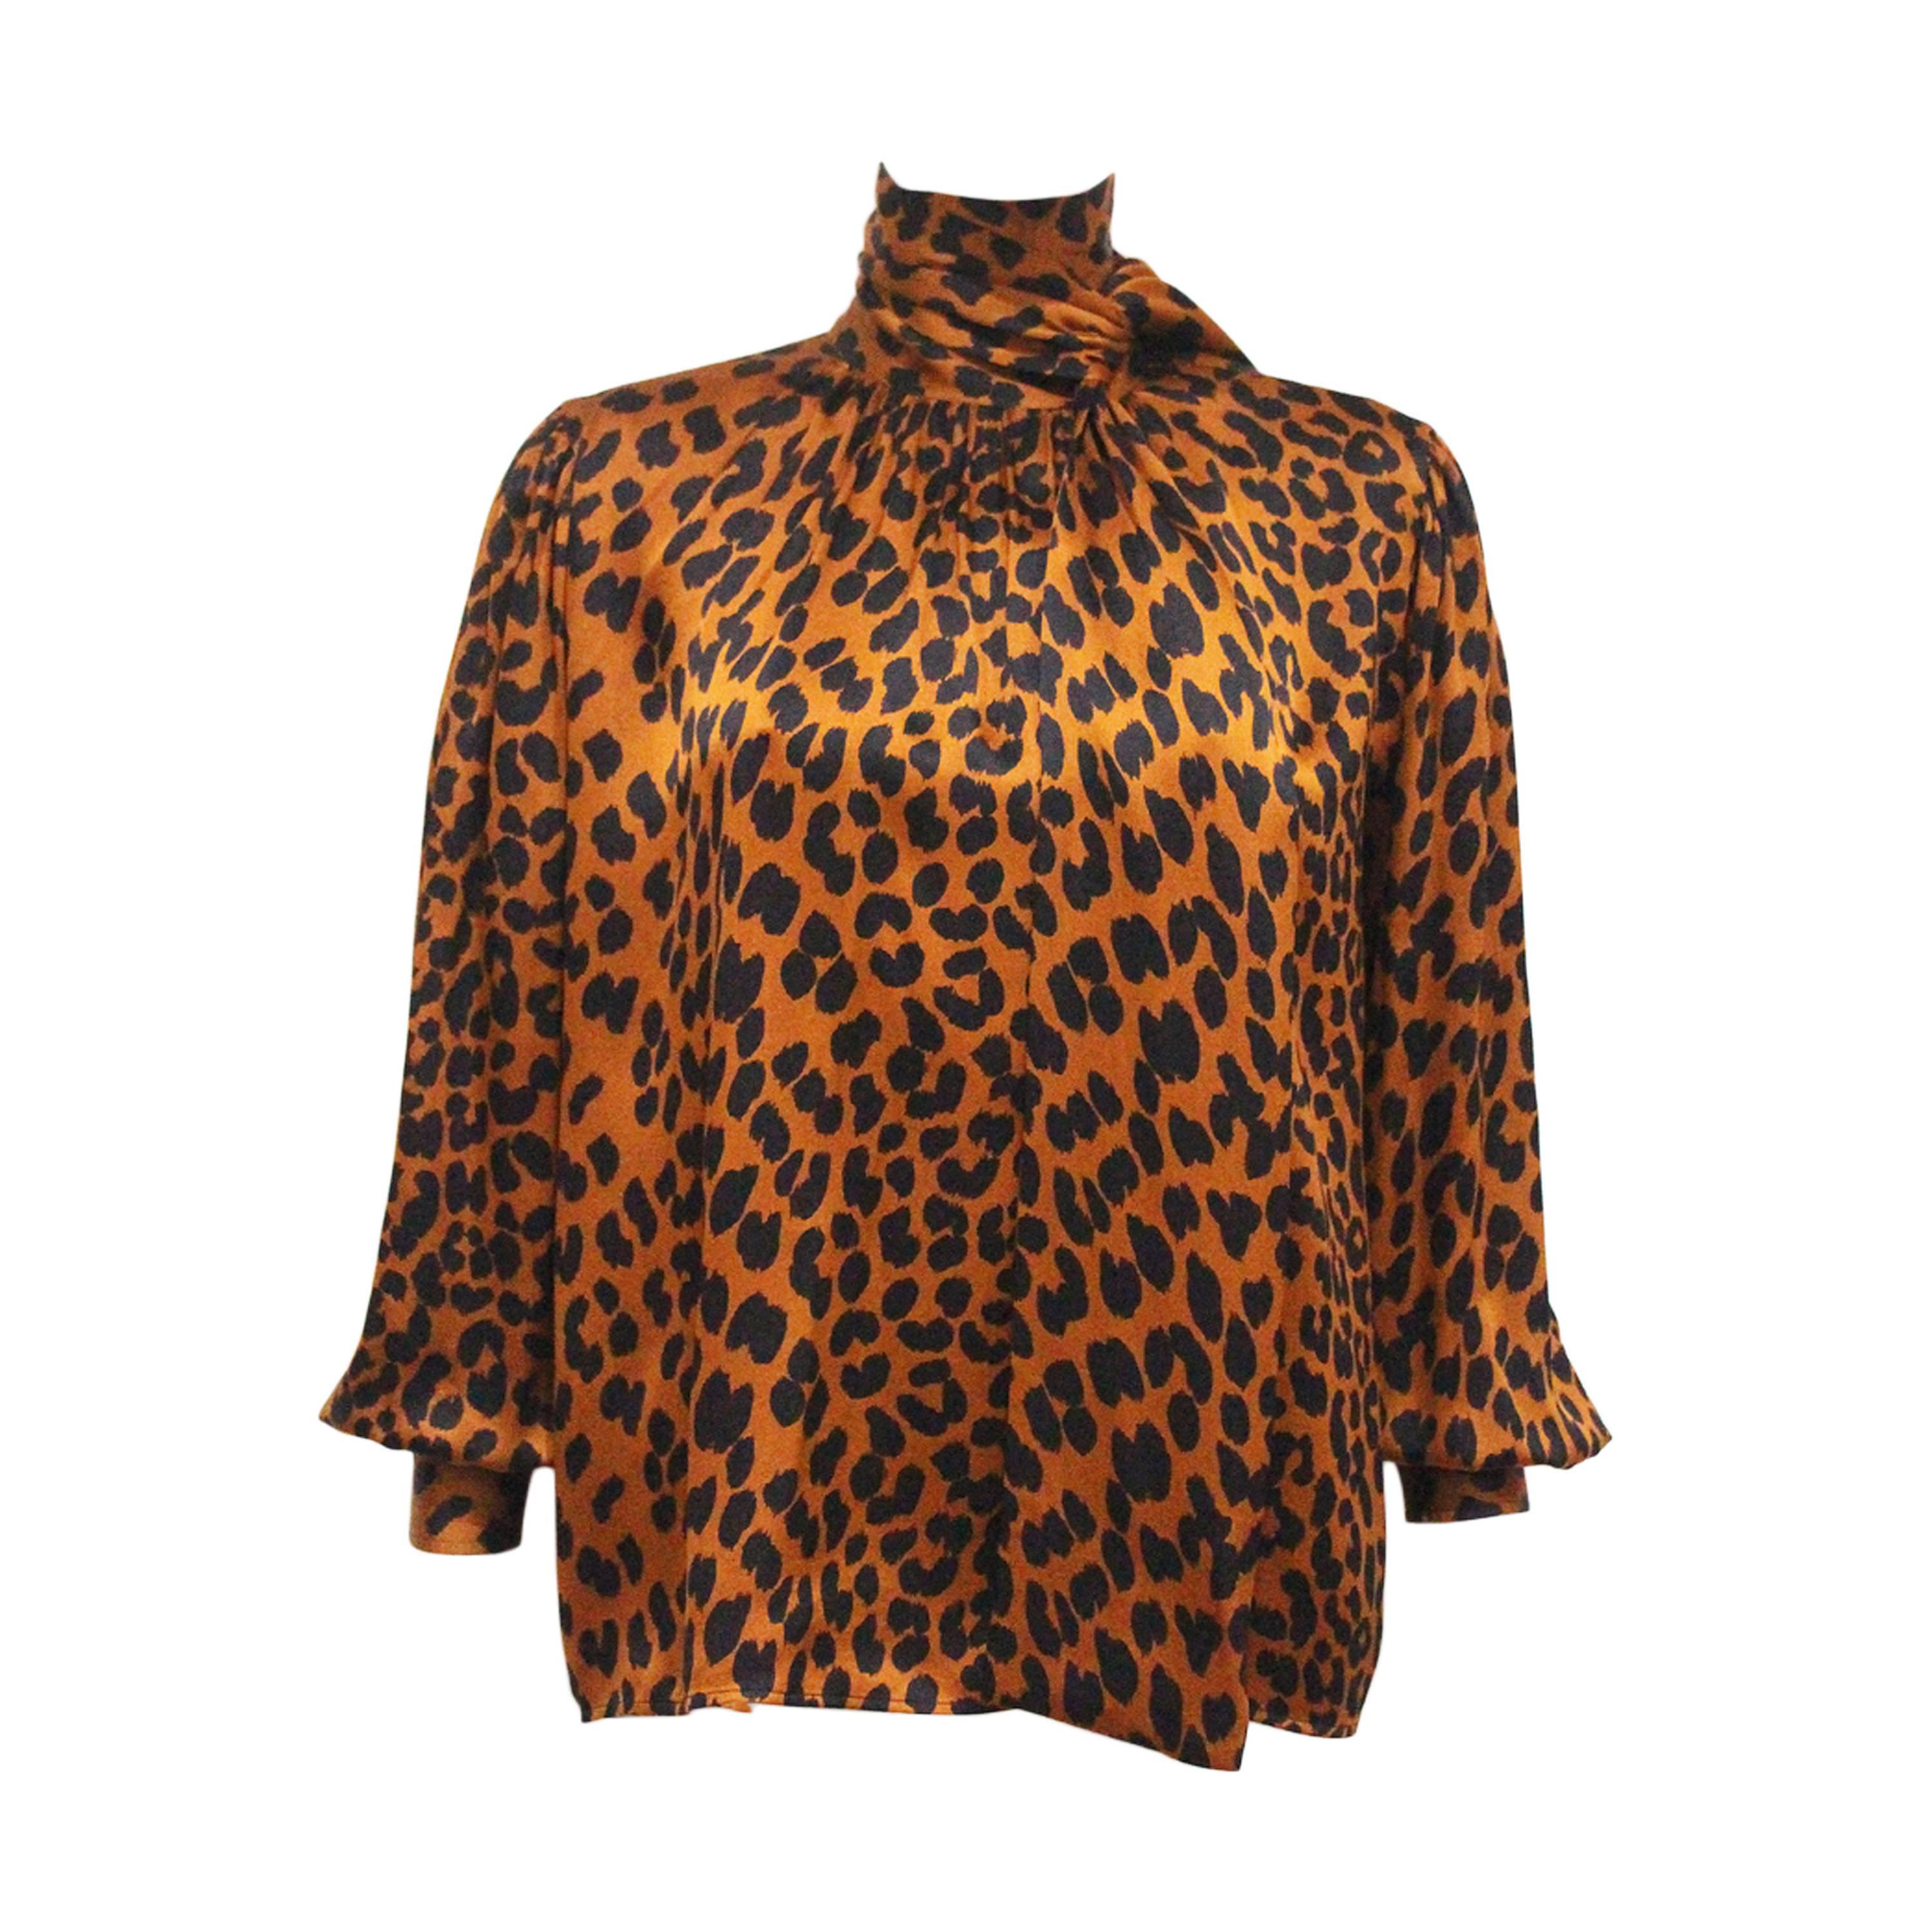 Yves Saint Laurent leopard print silk blouse, c. 1970s